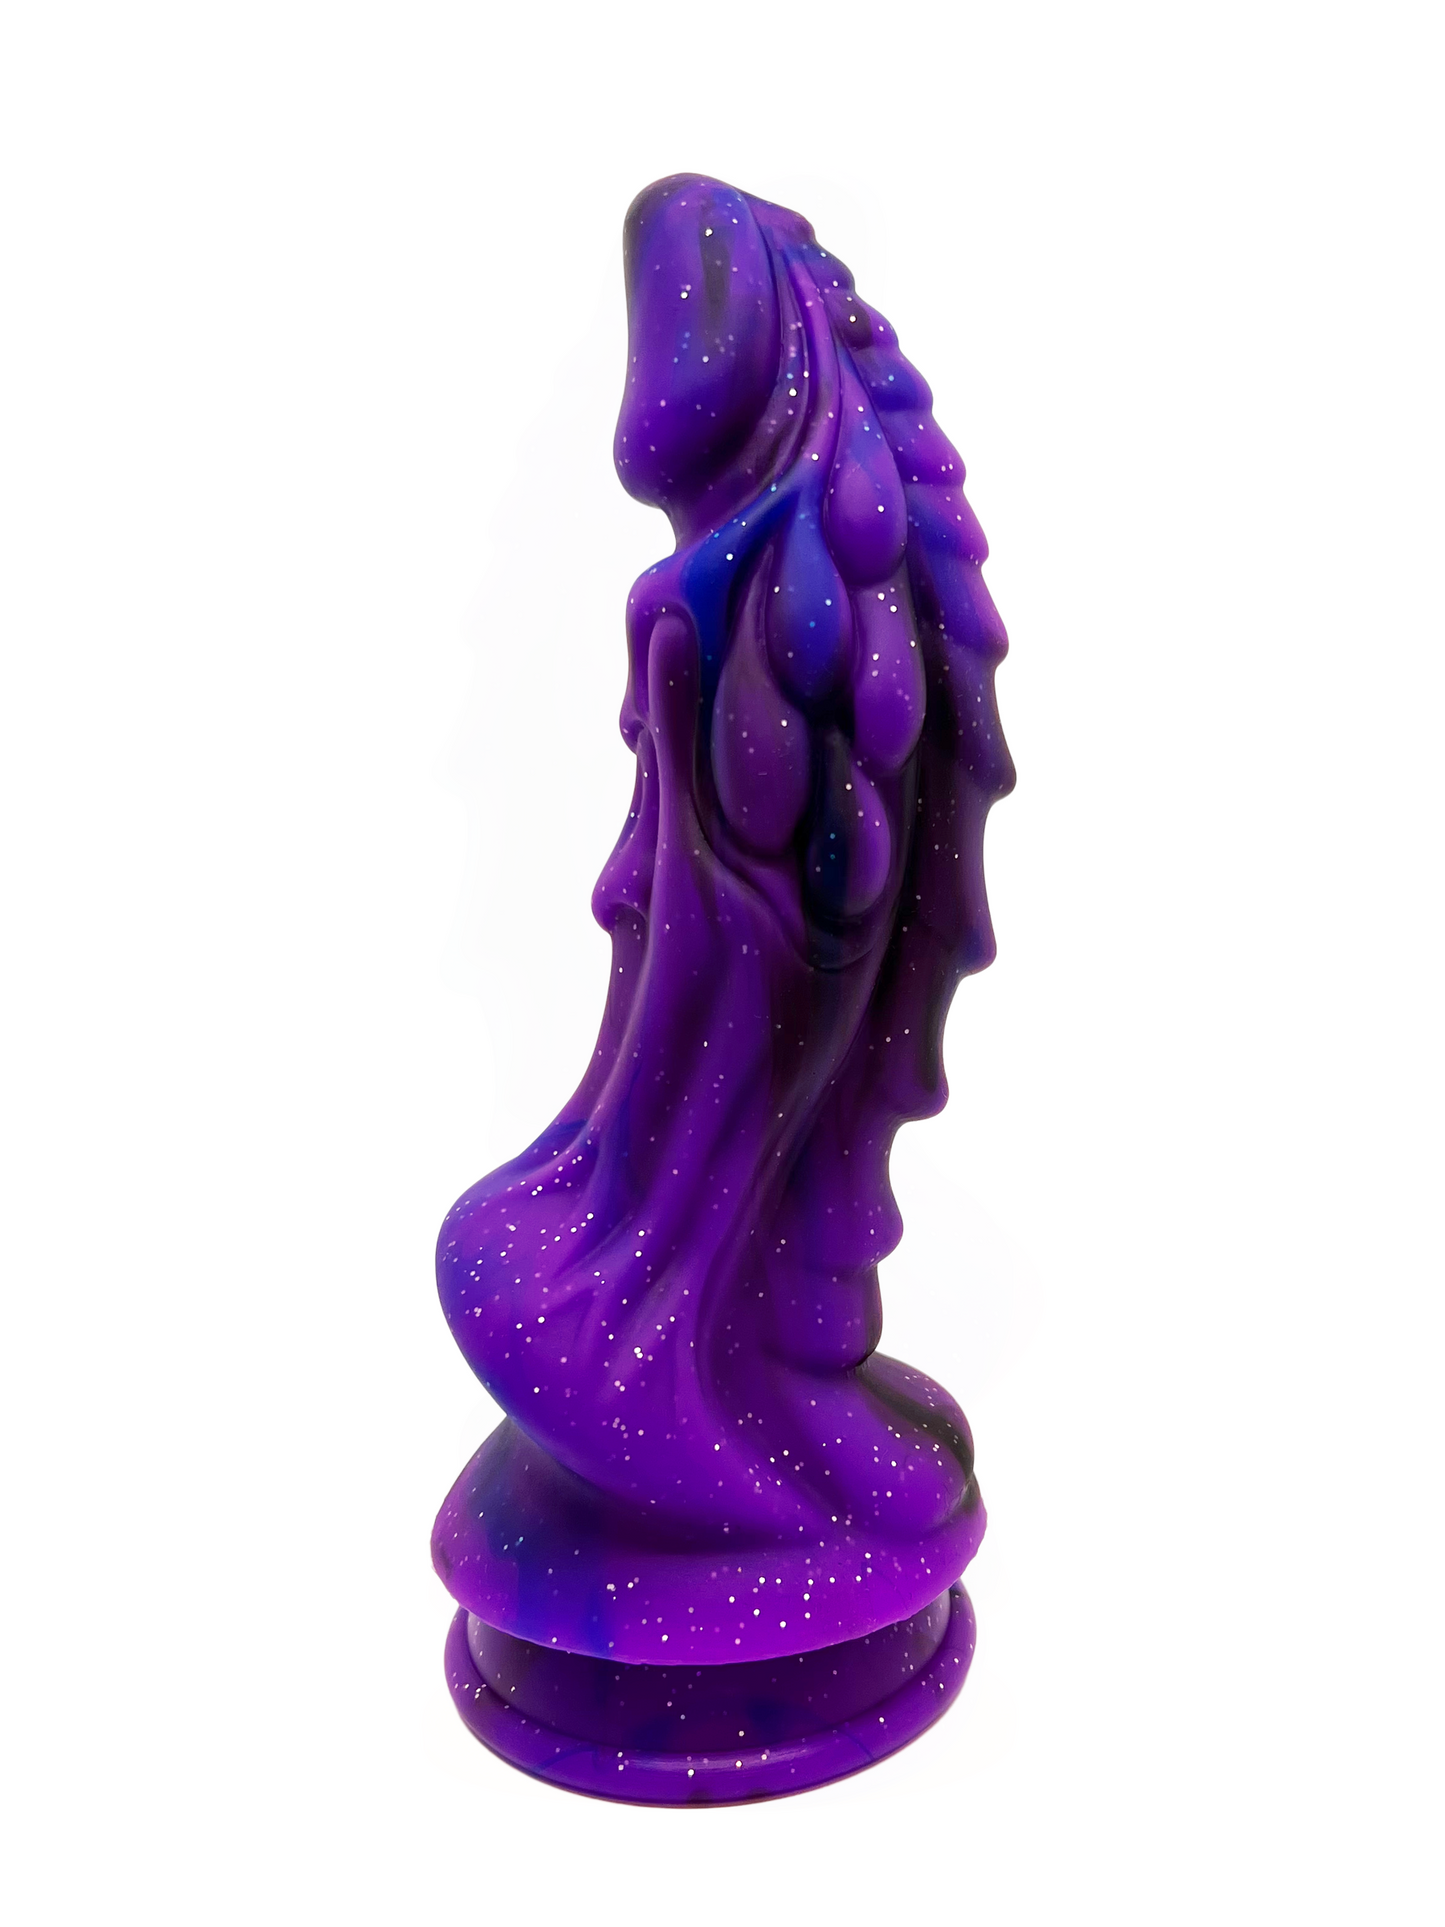 Creature Dragon Fire Purple Rain Dildo from side